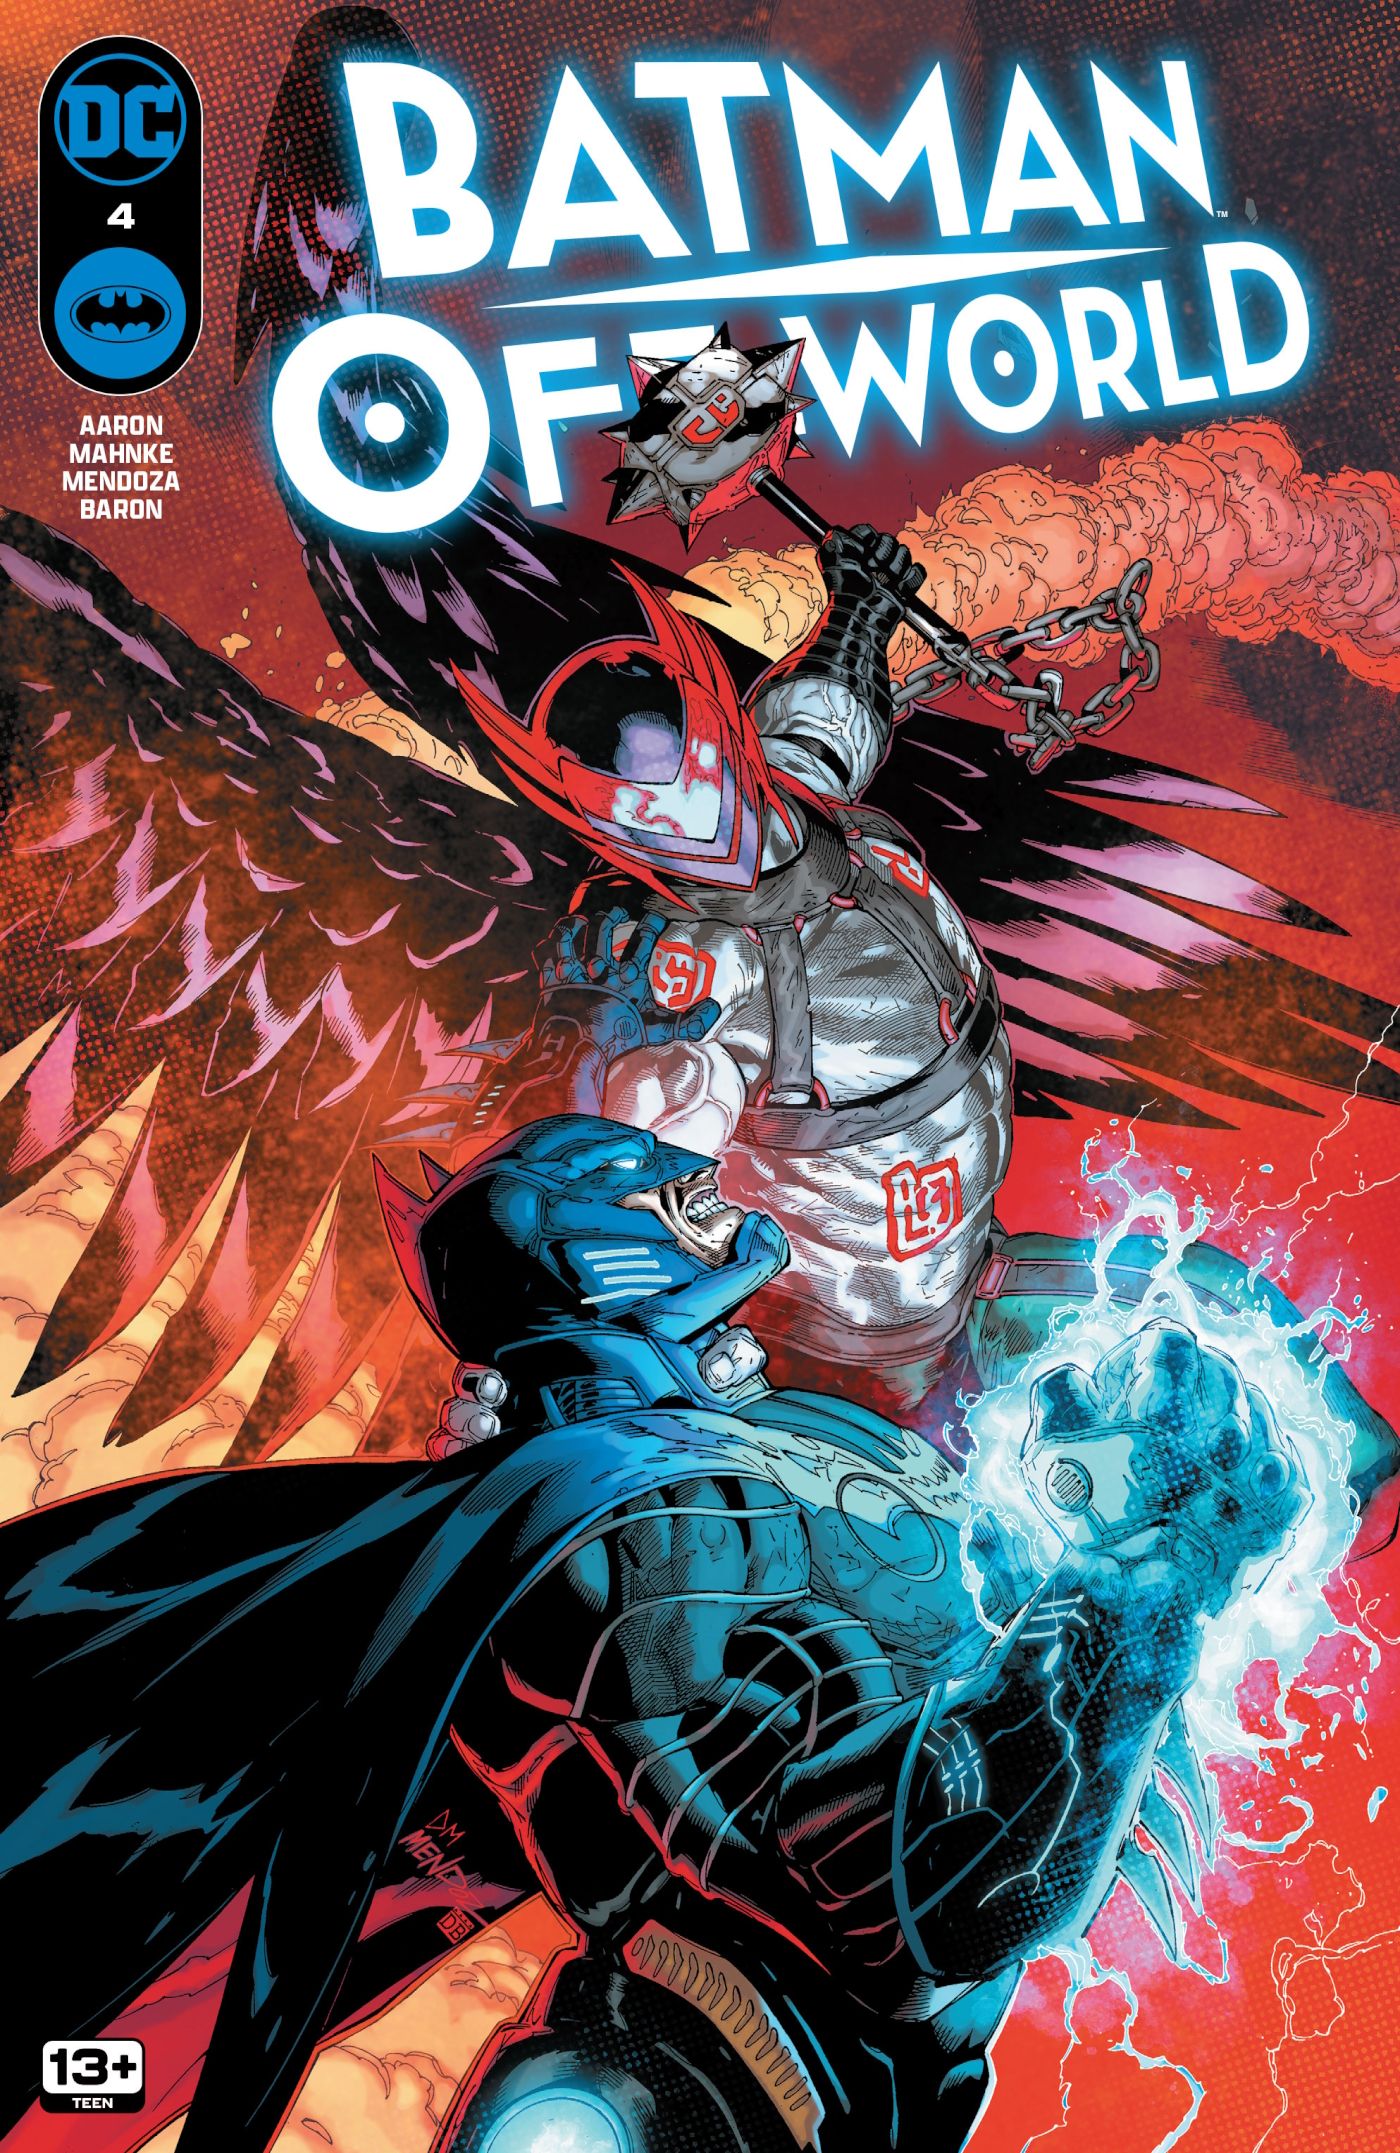 capa para Batman: Off World #4, o punho de Batman surgindo com energia enquanto um inimigo se aproxima, pronto para atacar.